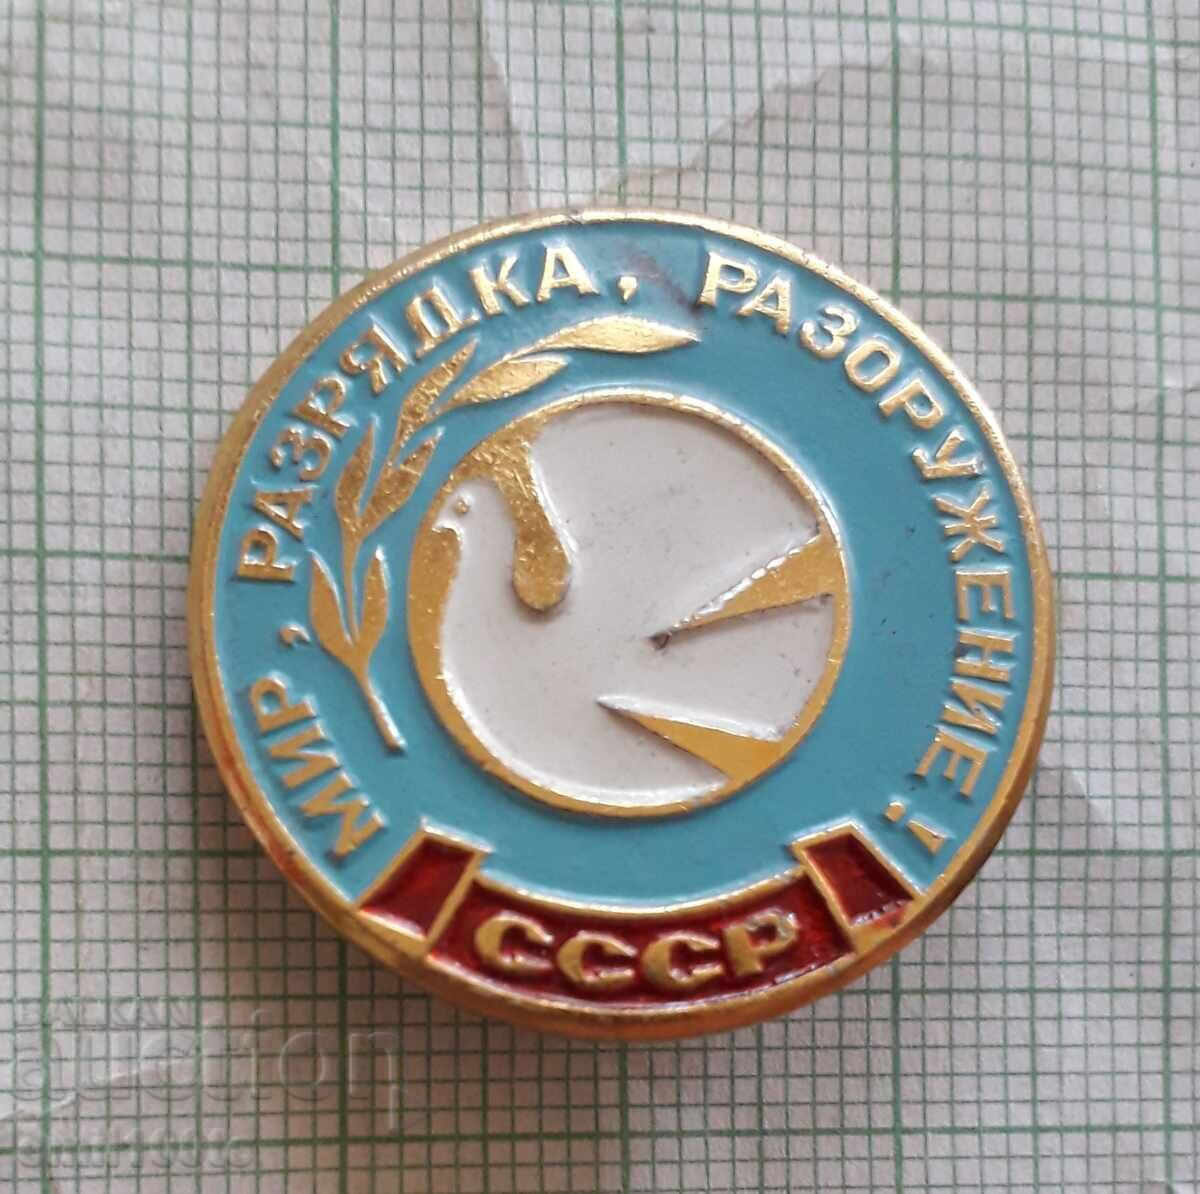 Σήμα - Ειρήνη παροπλισμός αφοπλισμός Περιστέρι της ειρήνης ΕΣΣΔ